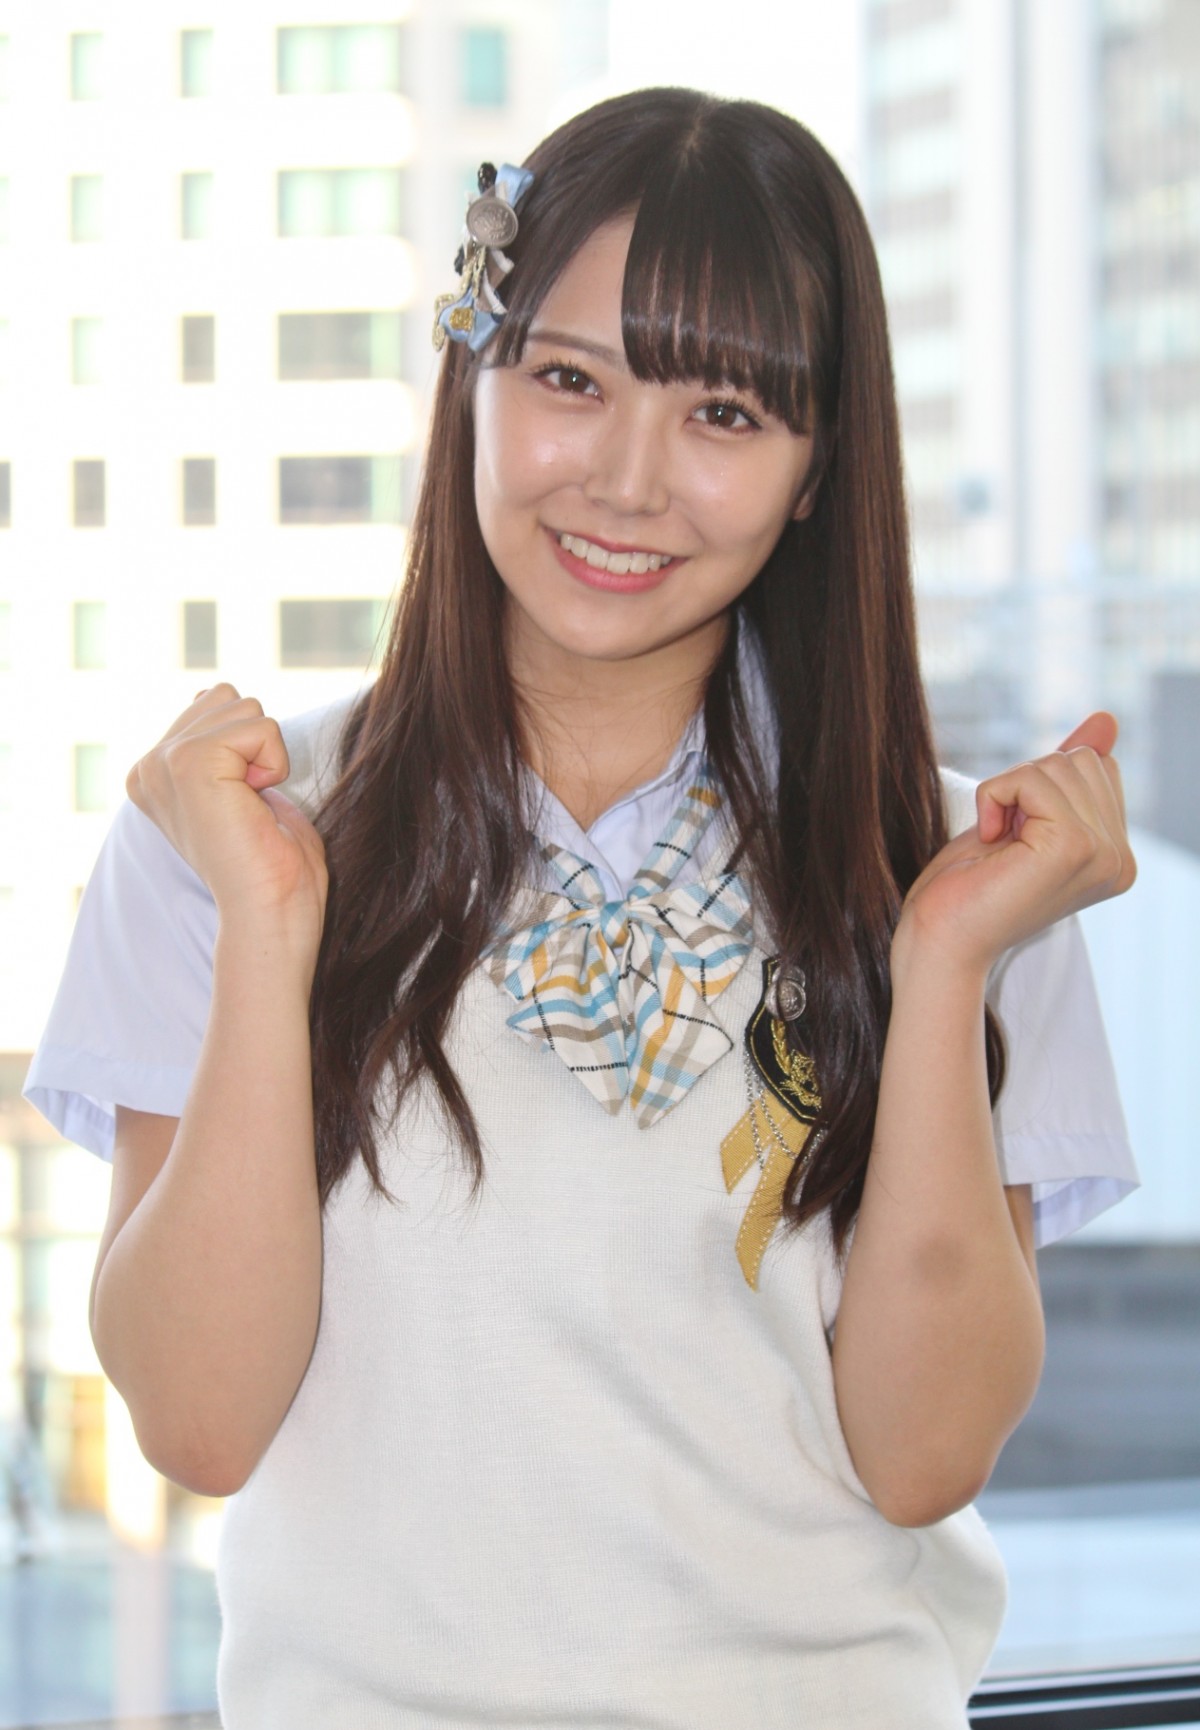 NMB48沖田彩華、“選抜”への思いを語る「さや姉に追いつきたい」